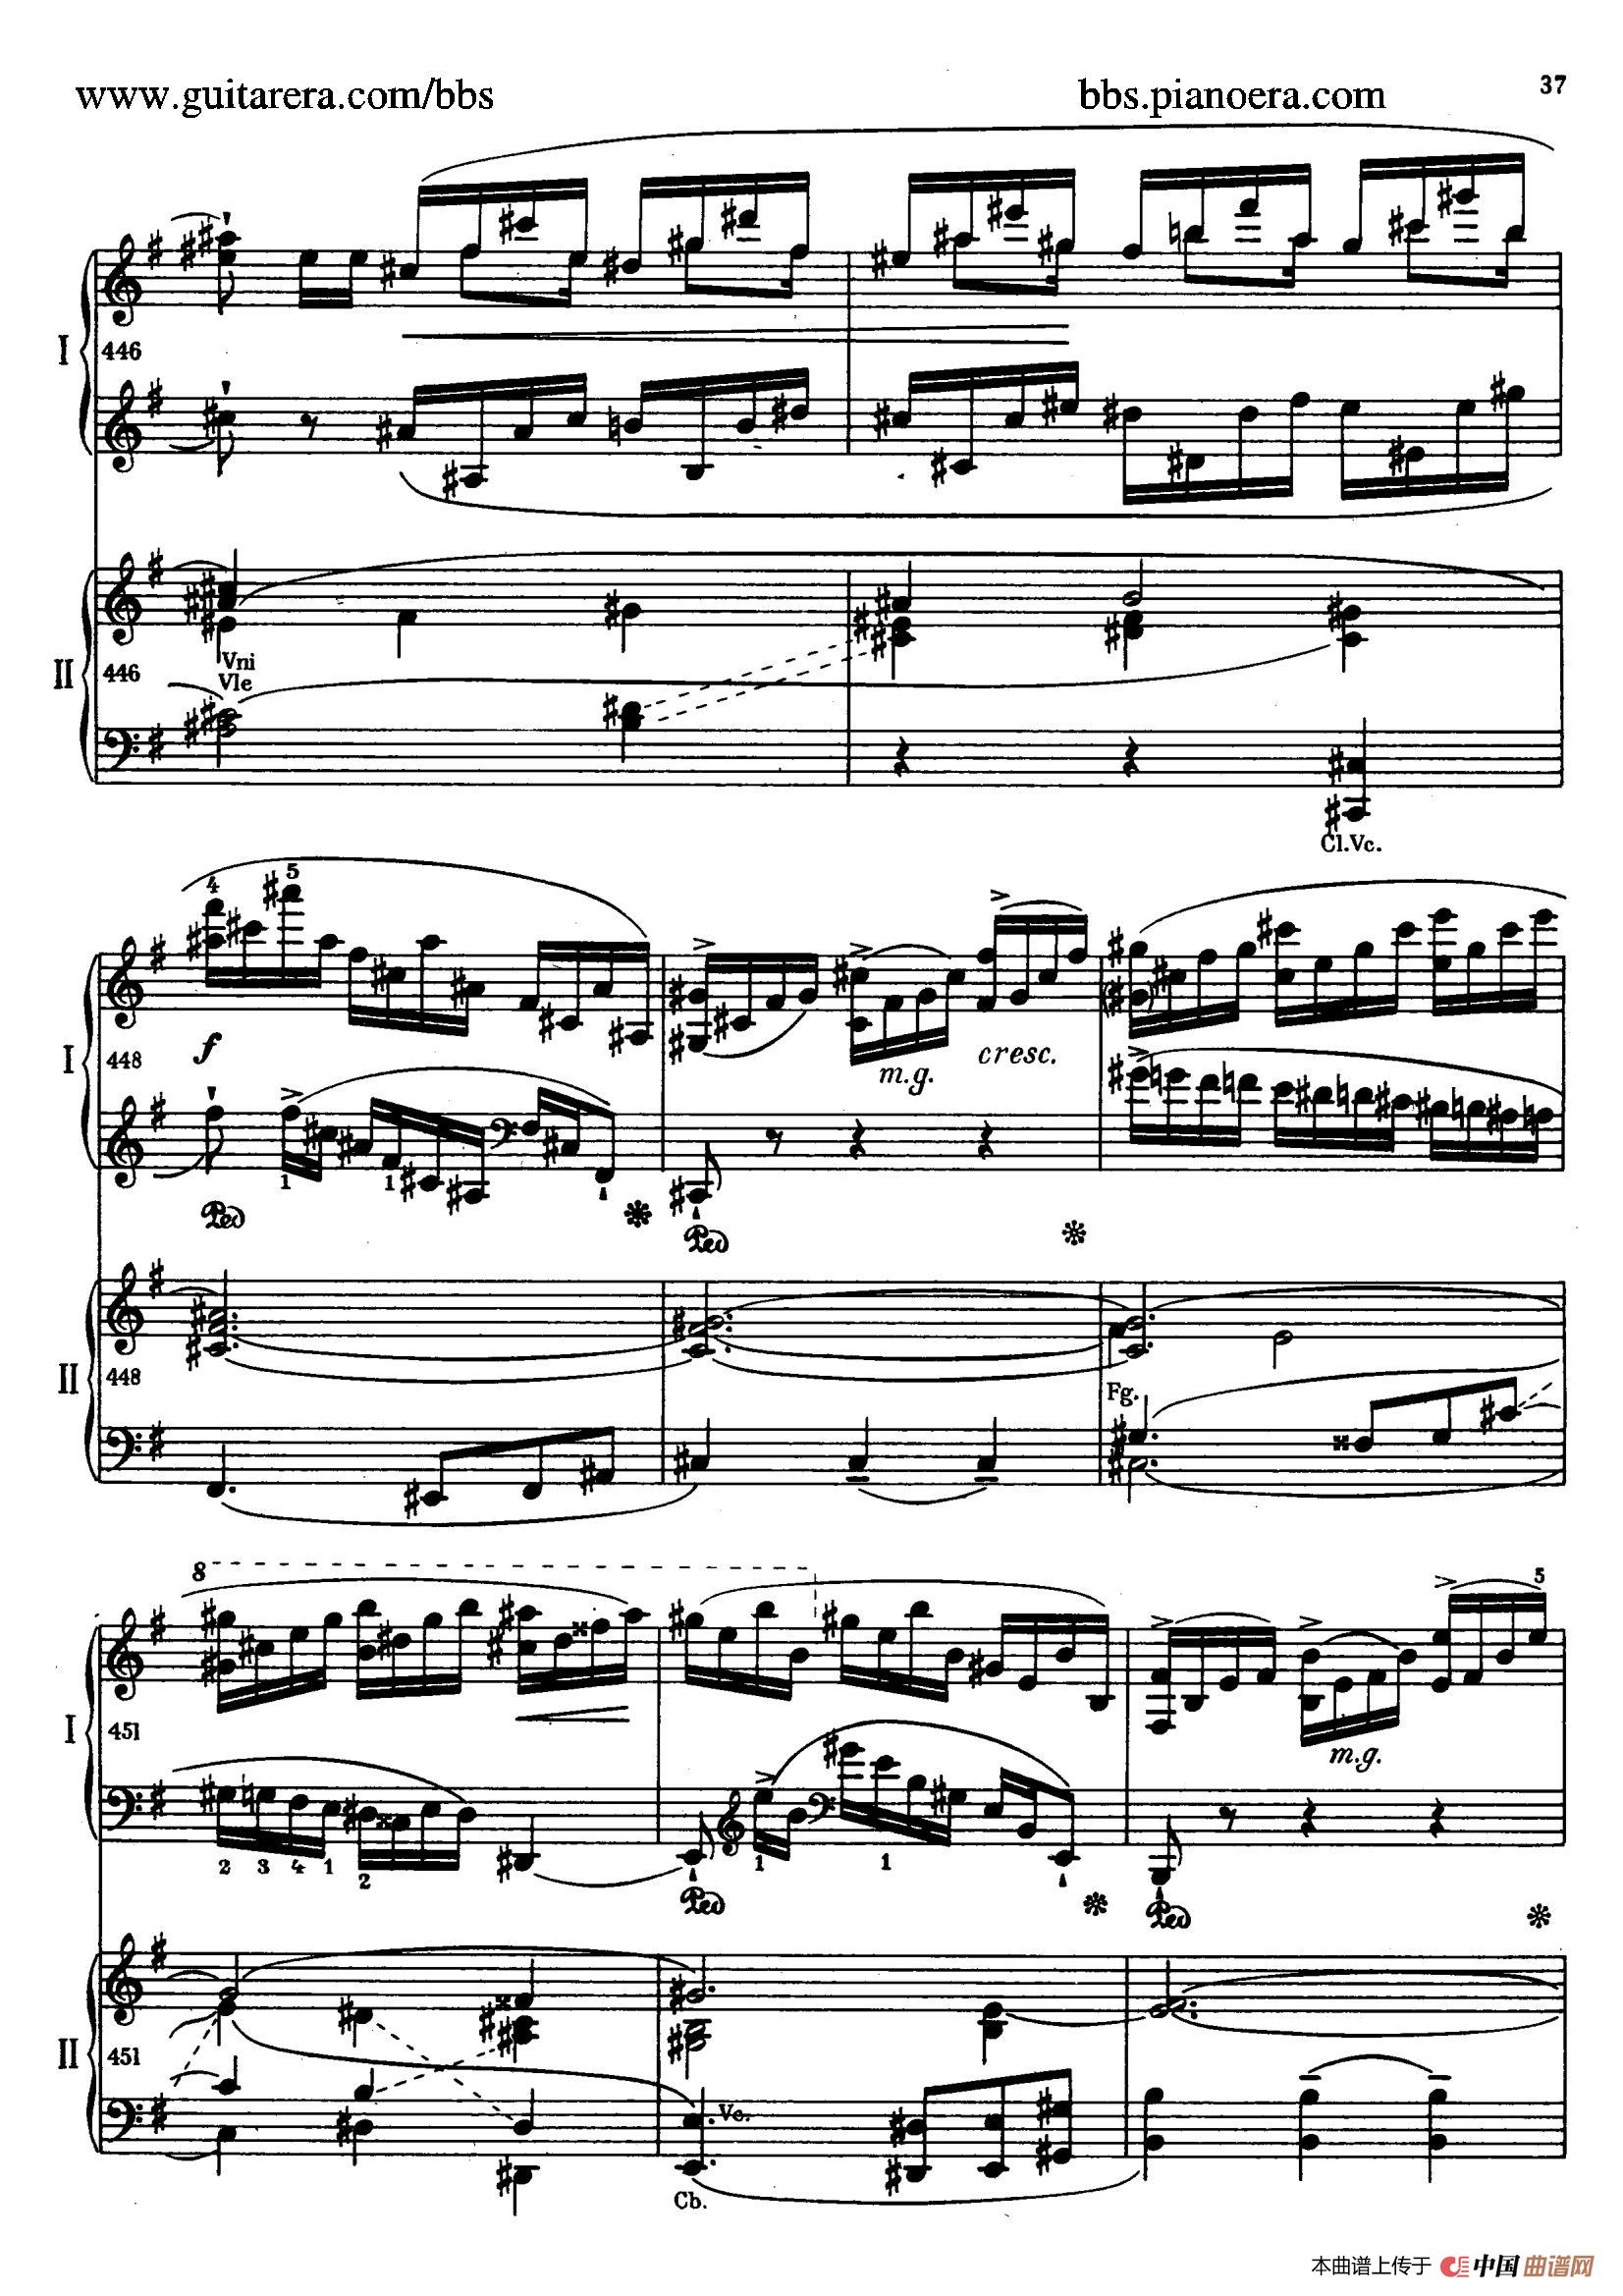 钢琴与琶音曲谱_钢琴琶音指法图(3)